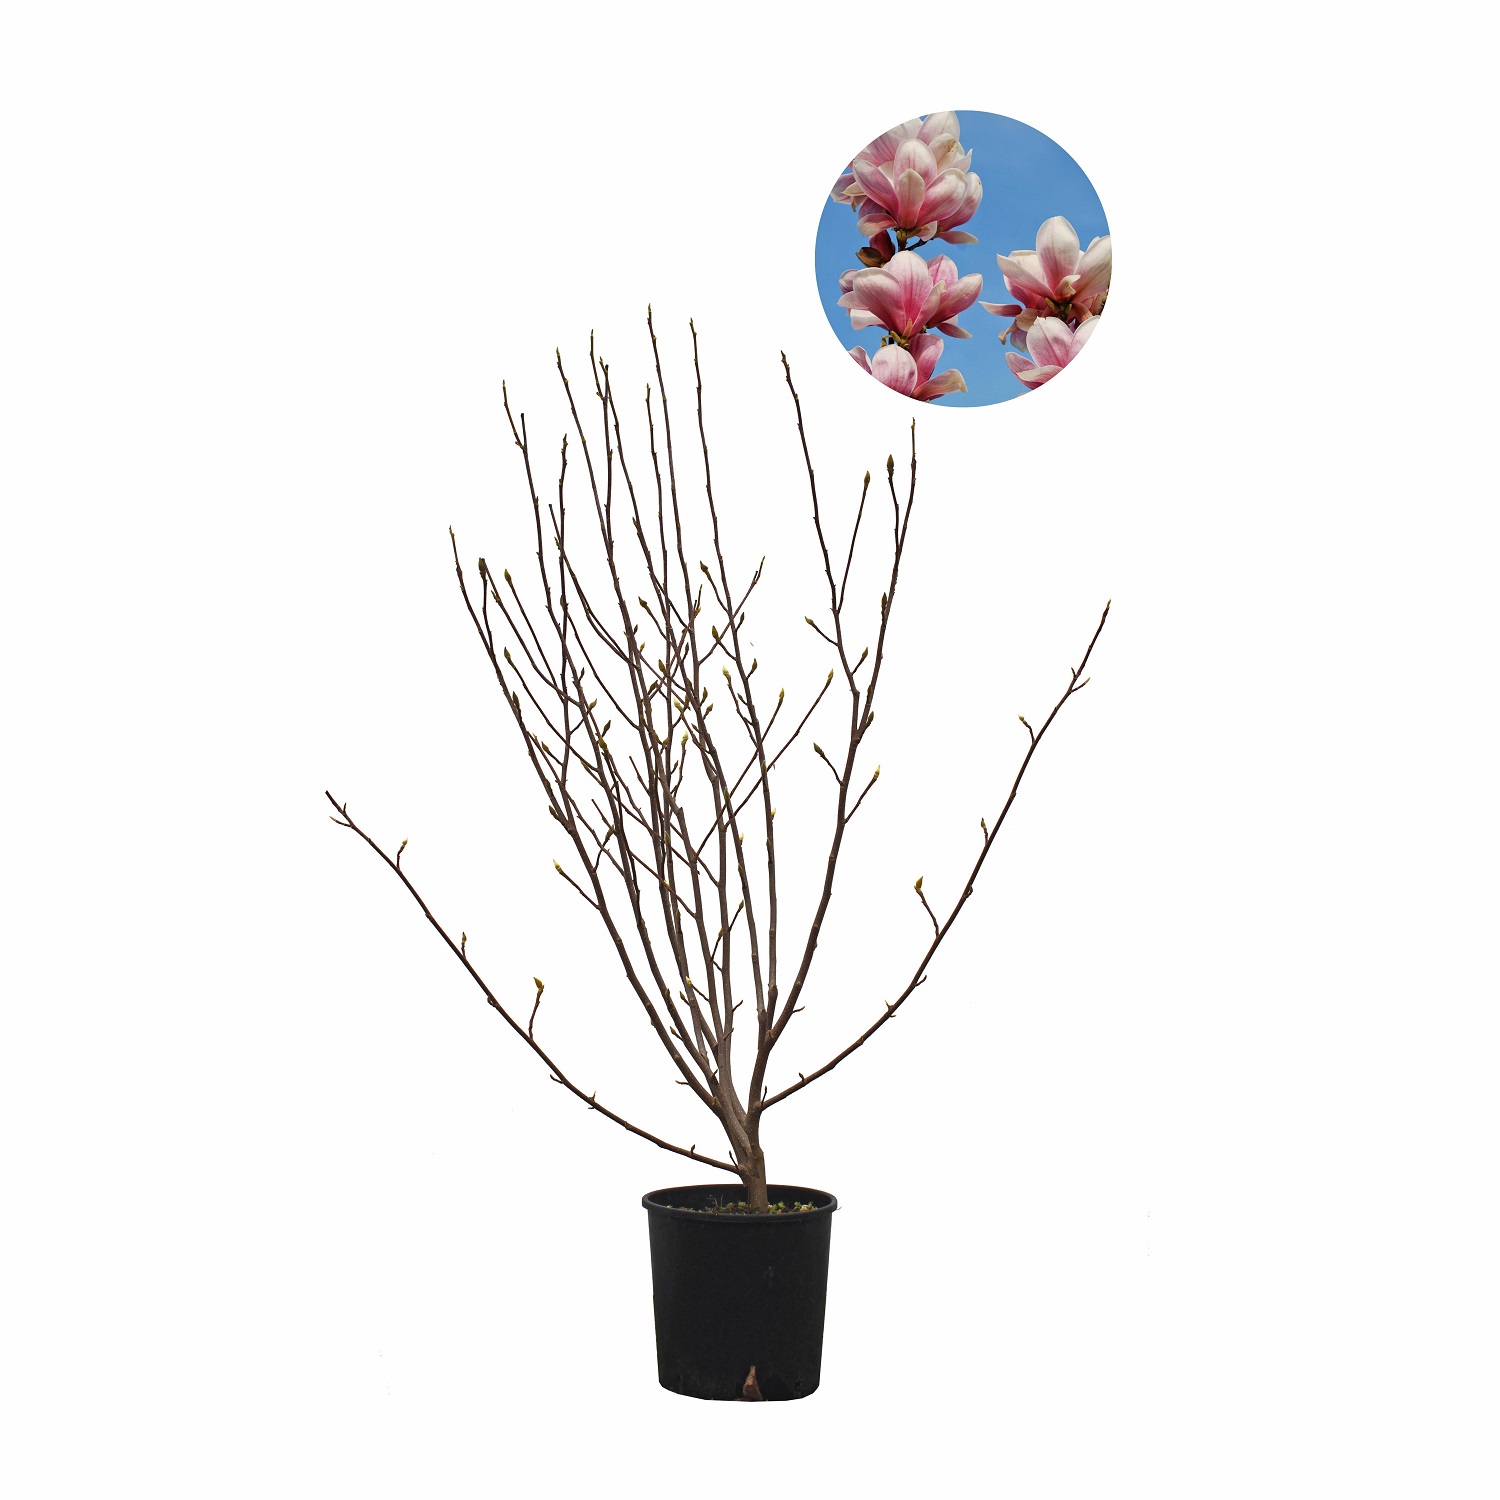 ALBERO pianta vaso giardino k-p86 MAGNOLIA soulangeana 1x TULIPANI-Magnolia 